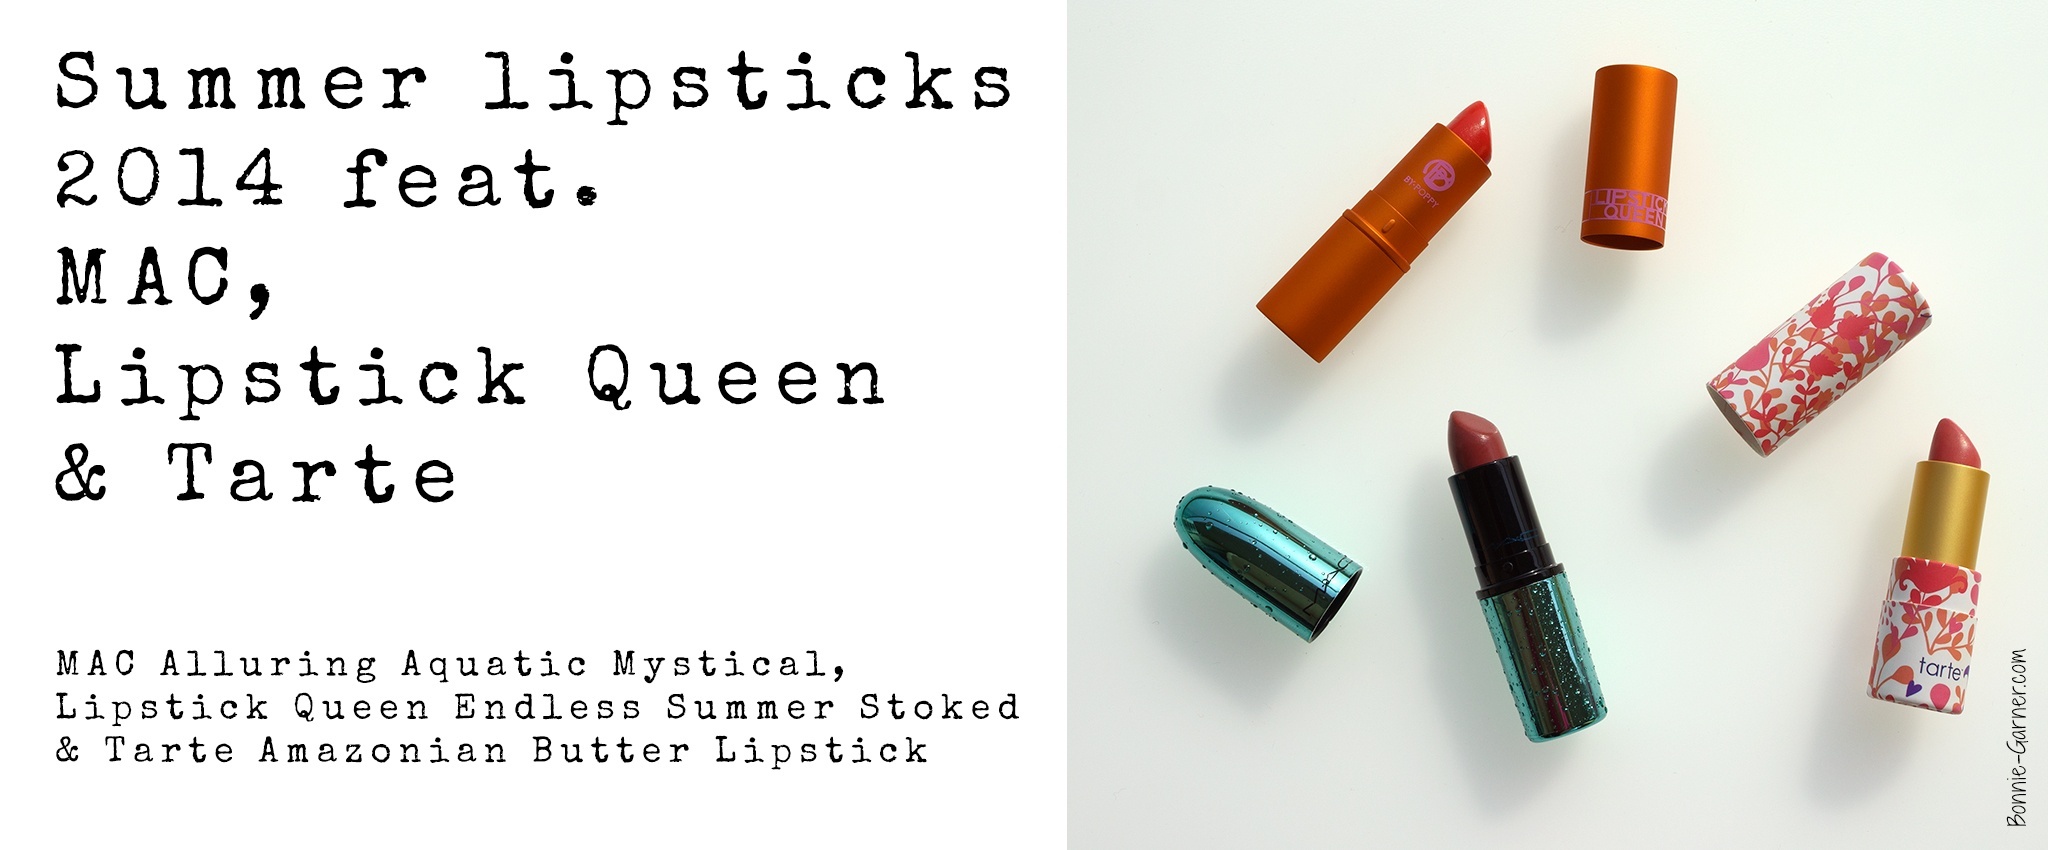 Summer lipsticks 2014 feat. MAC Alluring Aquatic Mystical, Lipstick Queen Endless Summer Stoked & Tarte Amazonian Butter Lipstick